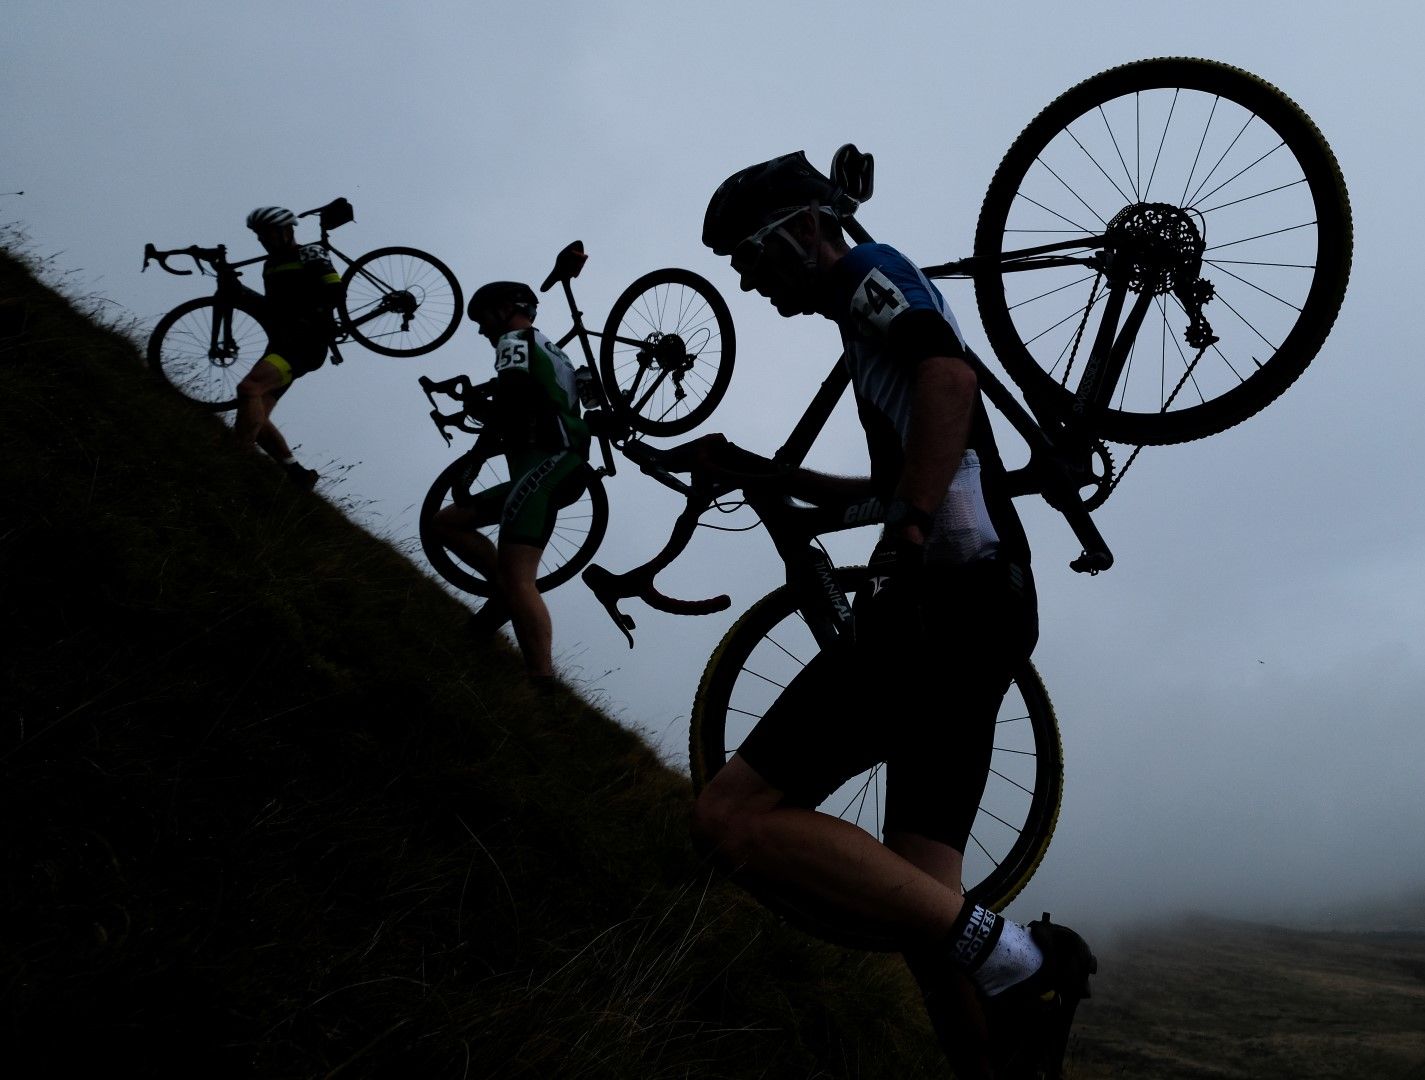 Състезателите катерят върховете из Йоркшир, Великобритания, по време на традиционния велокрос, който има над 60-годишна история. Това е най-тежкото състезание в дисциплината не само на Острова, а вероятно и в цяла Европа.